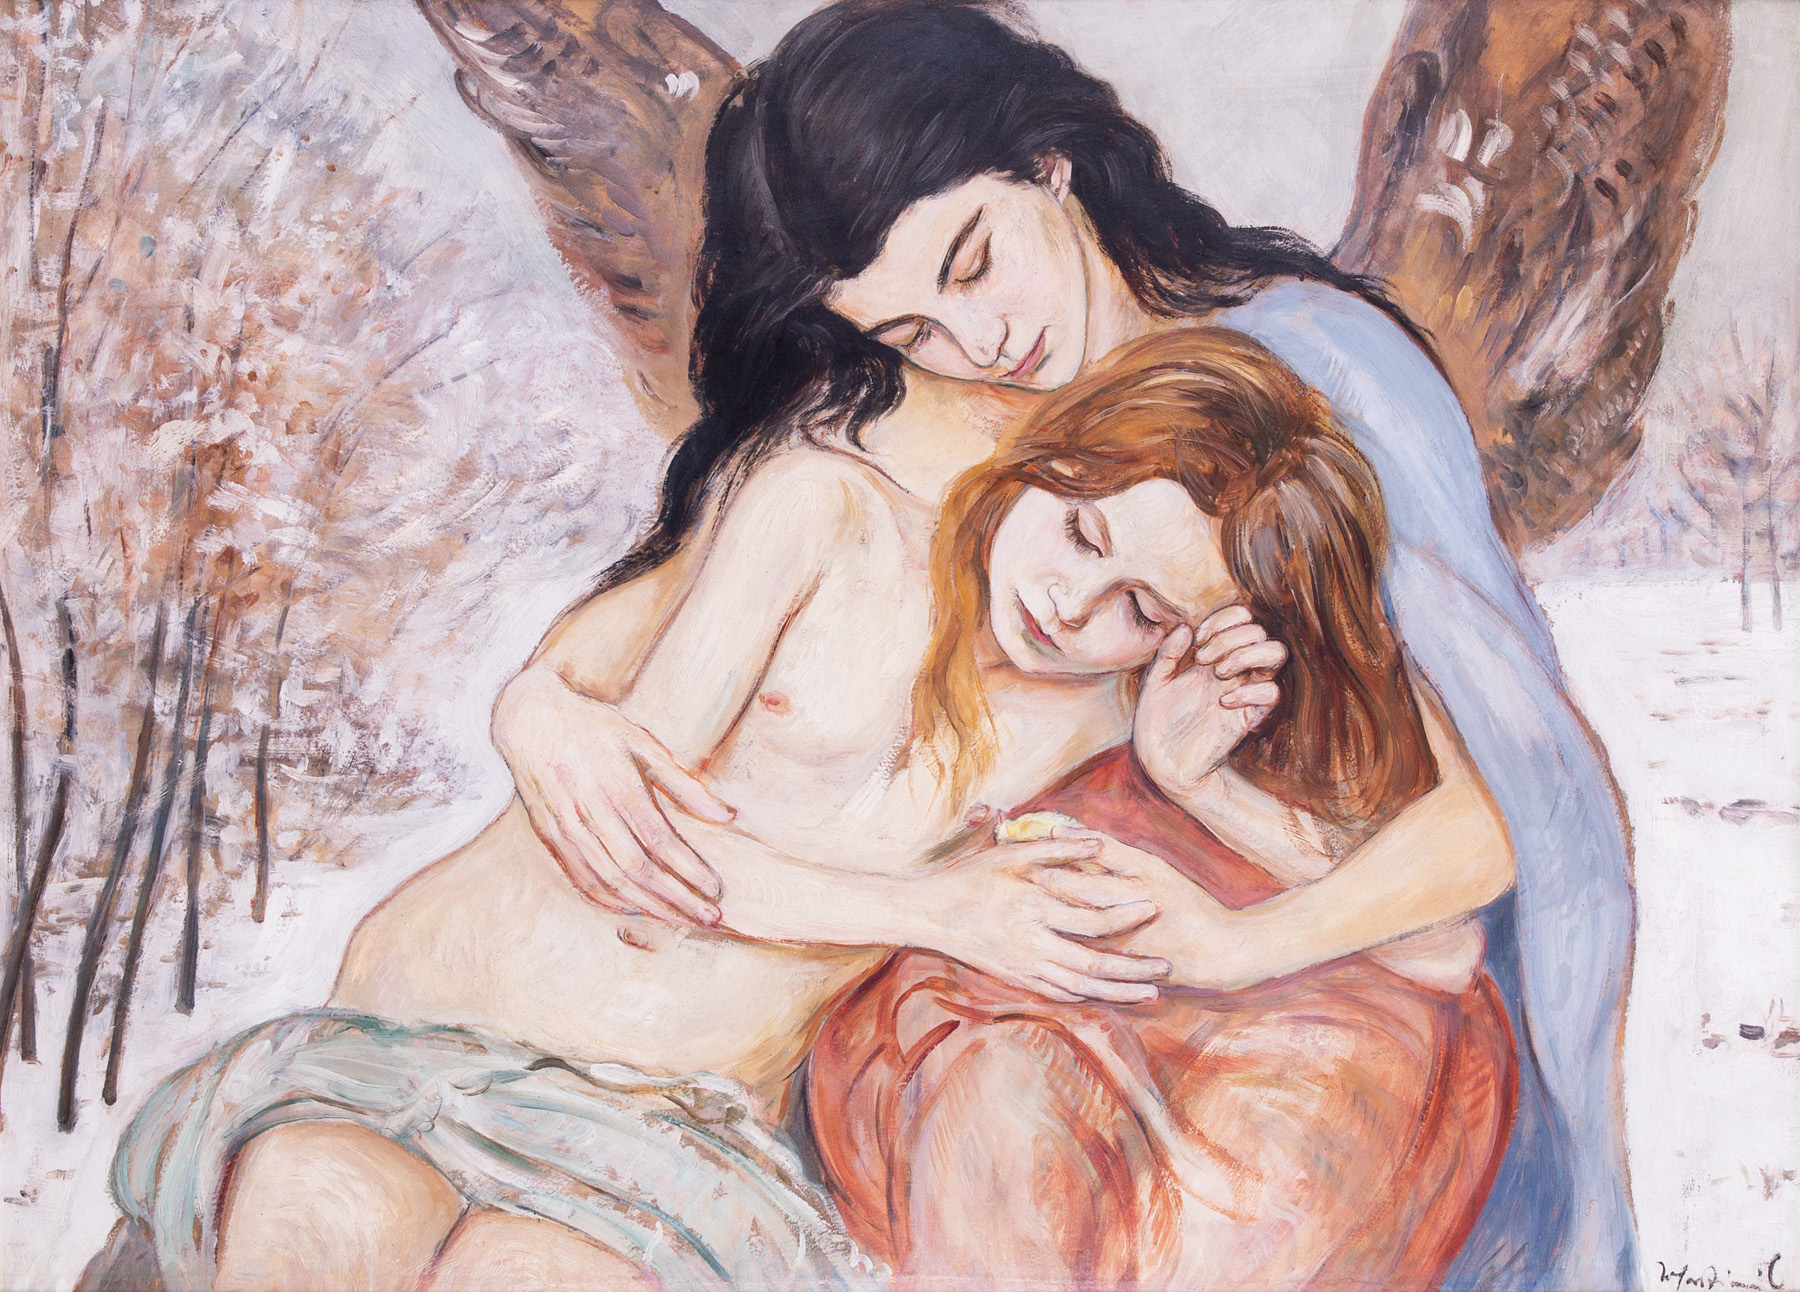 Wlastimil Hofman "Pod opieką anioła", lata 20. XX wieku, źródło: Salon Dzieł Sztuki Connaisseur